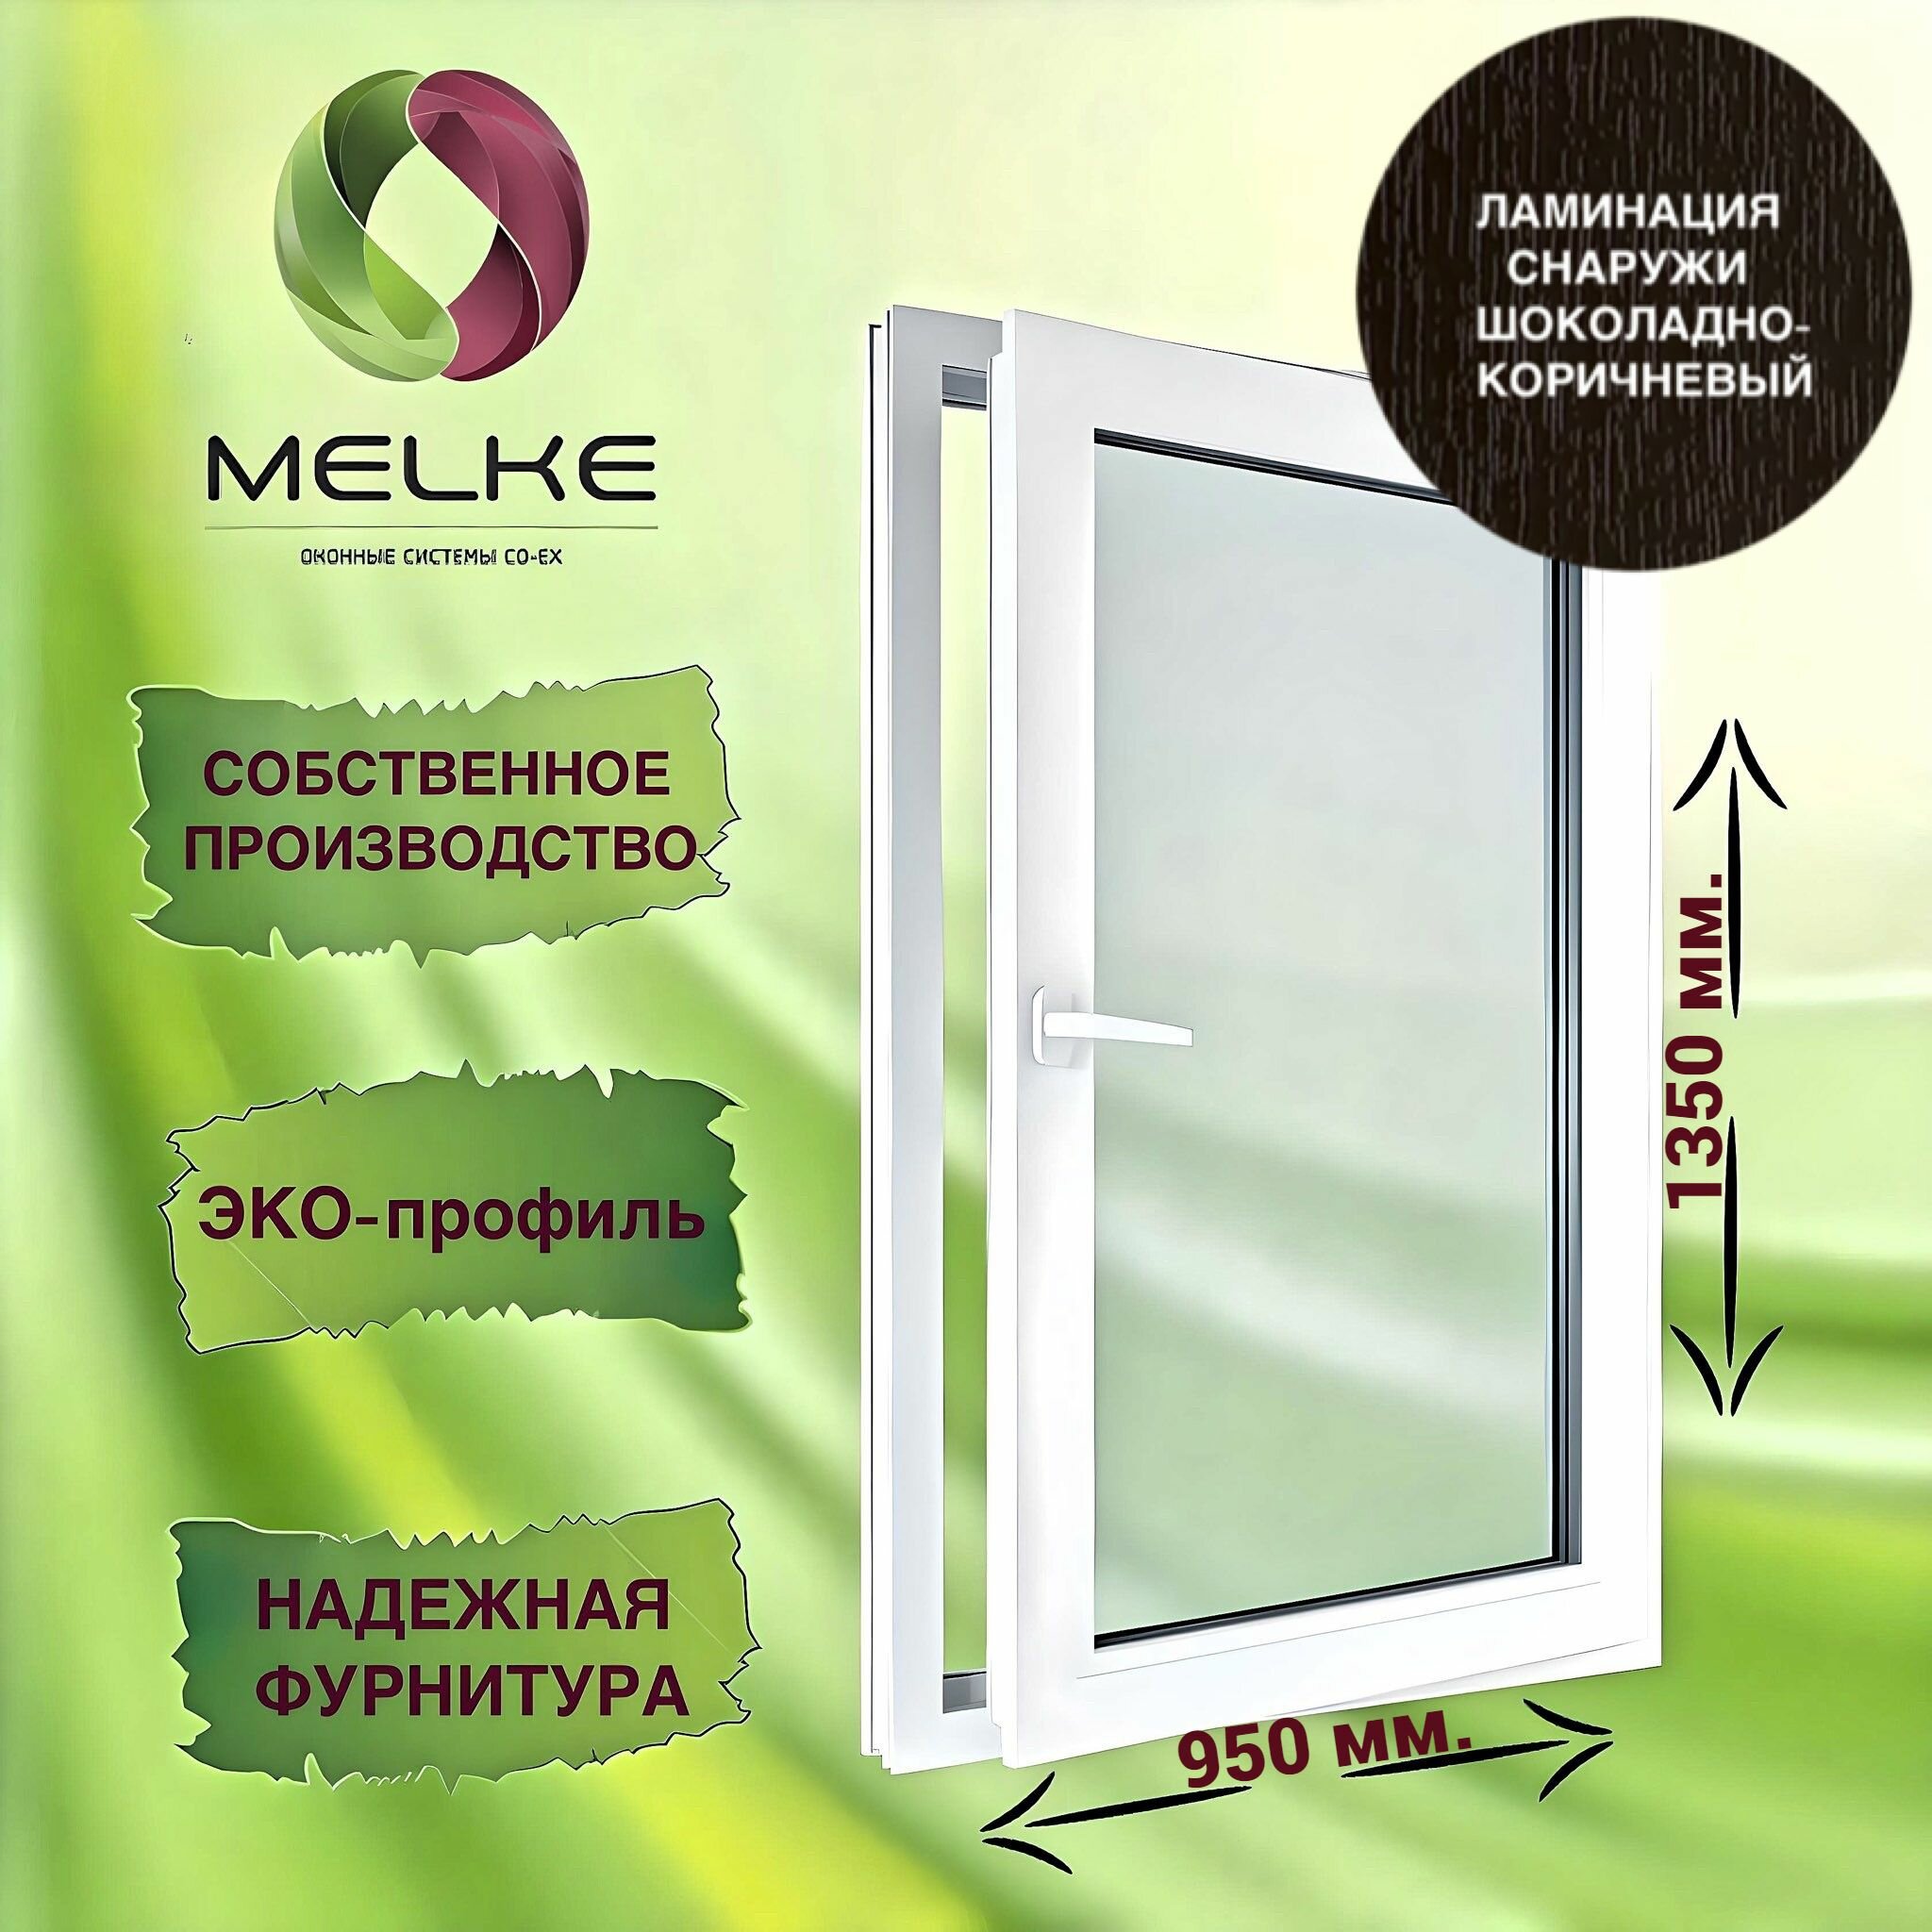 Окно 1350 х 950 мм, Melke 60 (Фурнитура FUTURUSS), правое одностворчатое, поворотно-откидное, цвет внешней ламинации Шоколадно-коричневый, 2-х камерный стеклопакет, 3 стекла